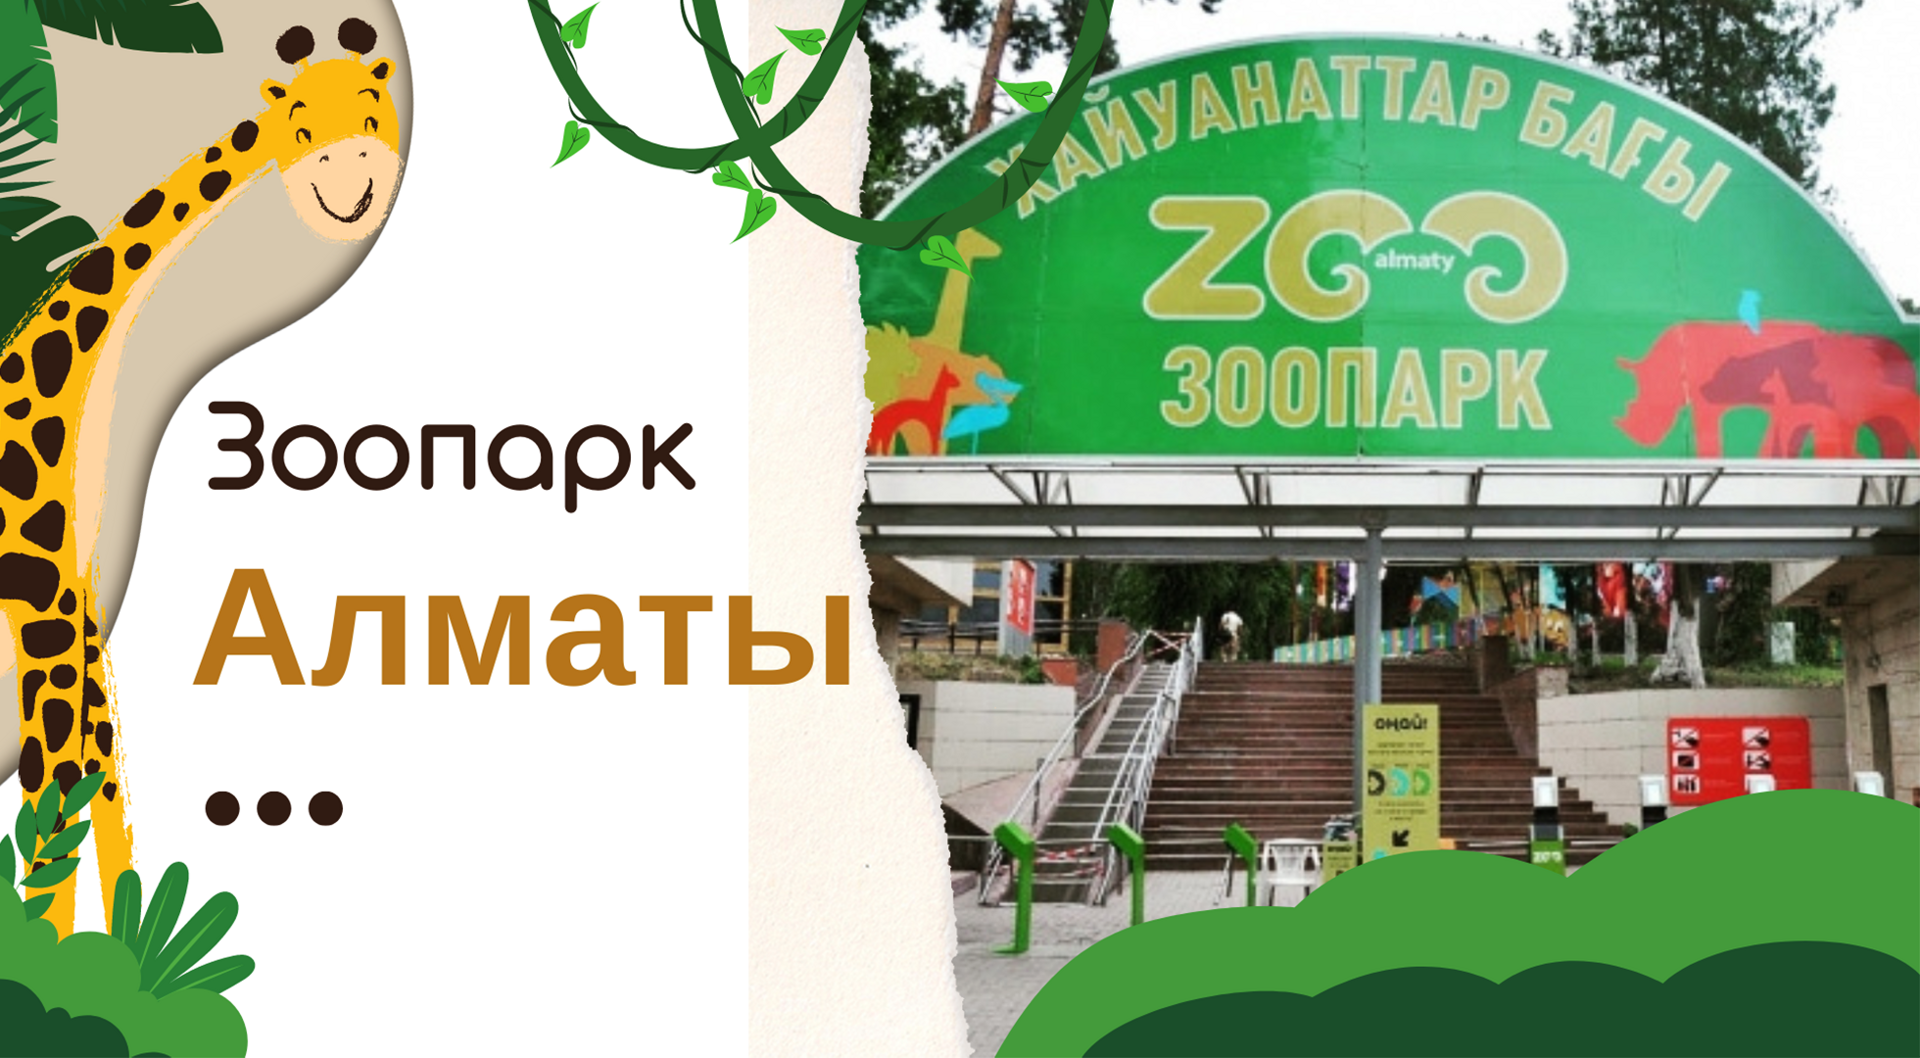 Зоопарк Алматы: отзыв с фото и видео, интересные факты о животных